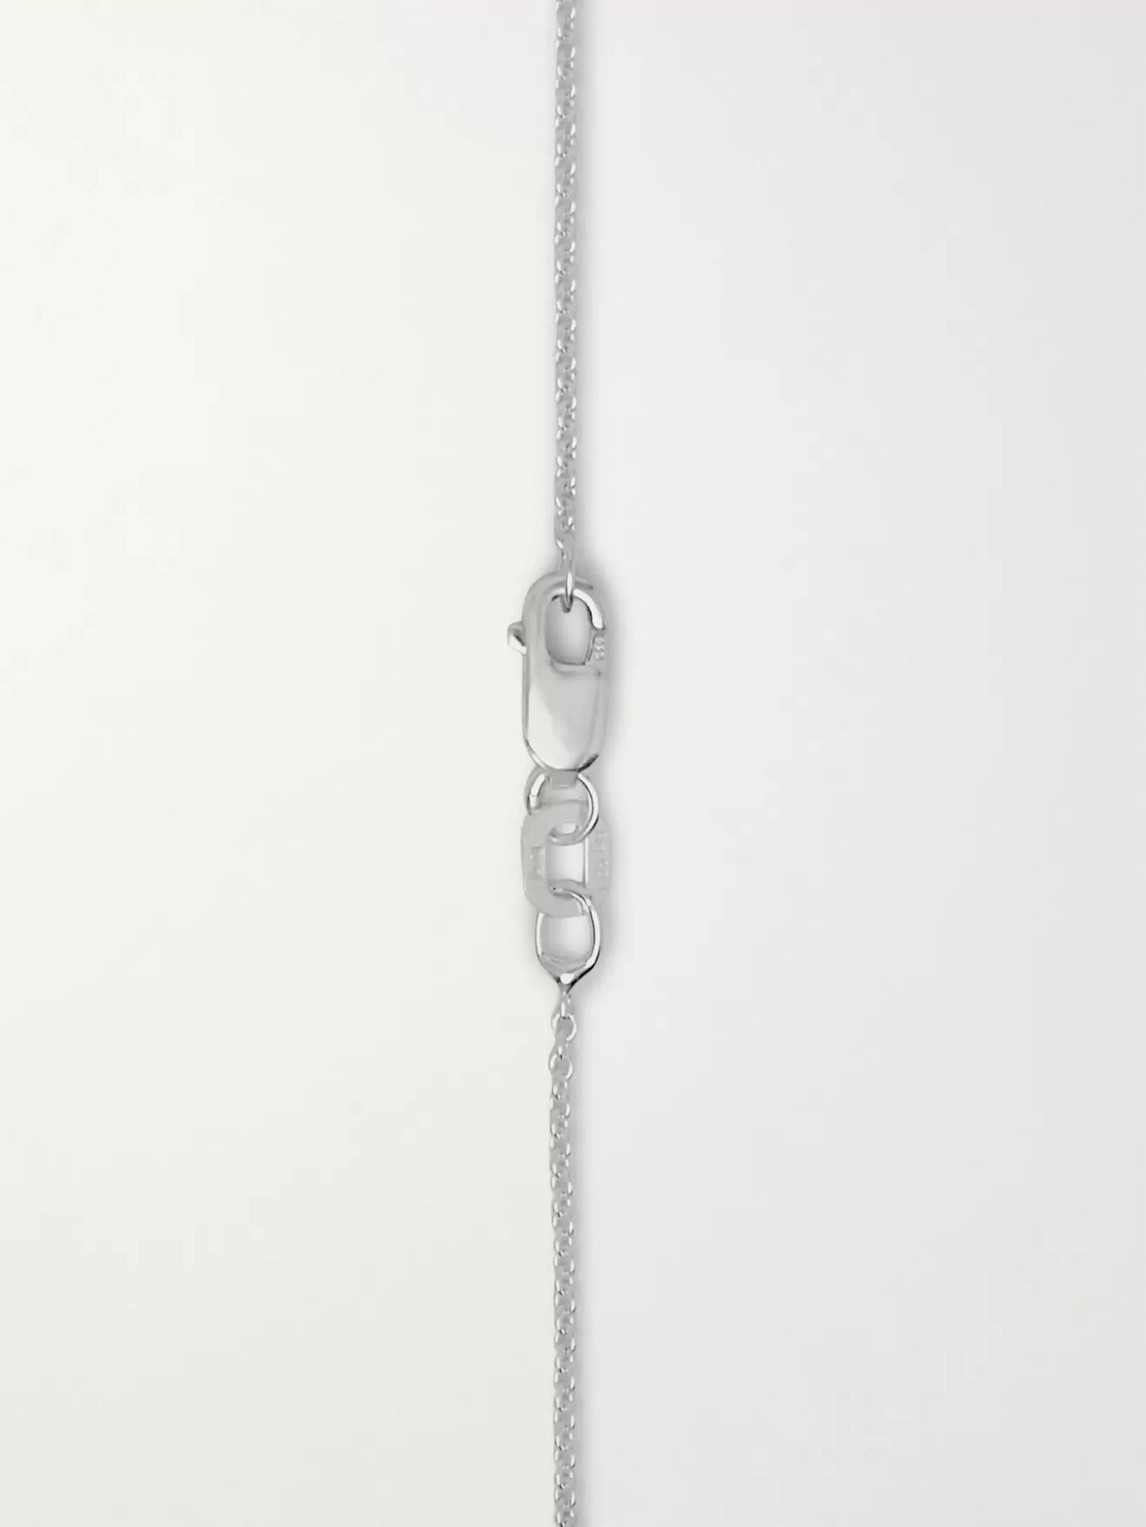 Shop Le Gramme 3.4g Sterling Silver Pendant Necklace